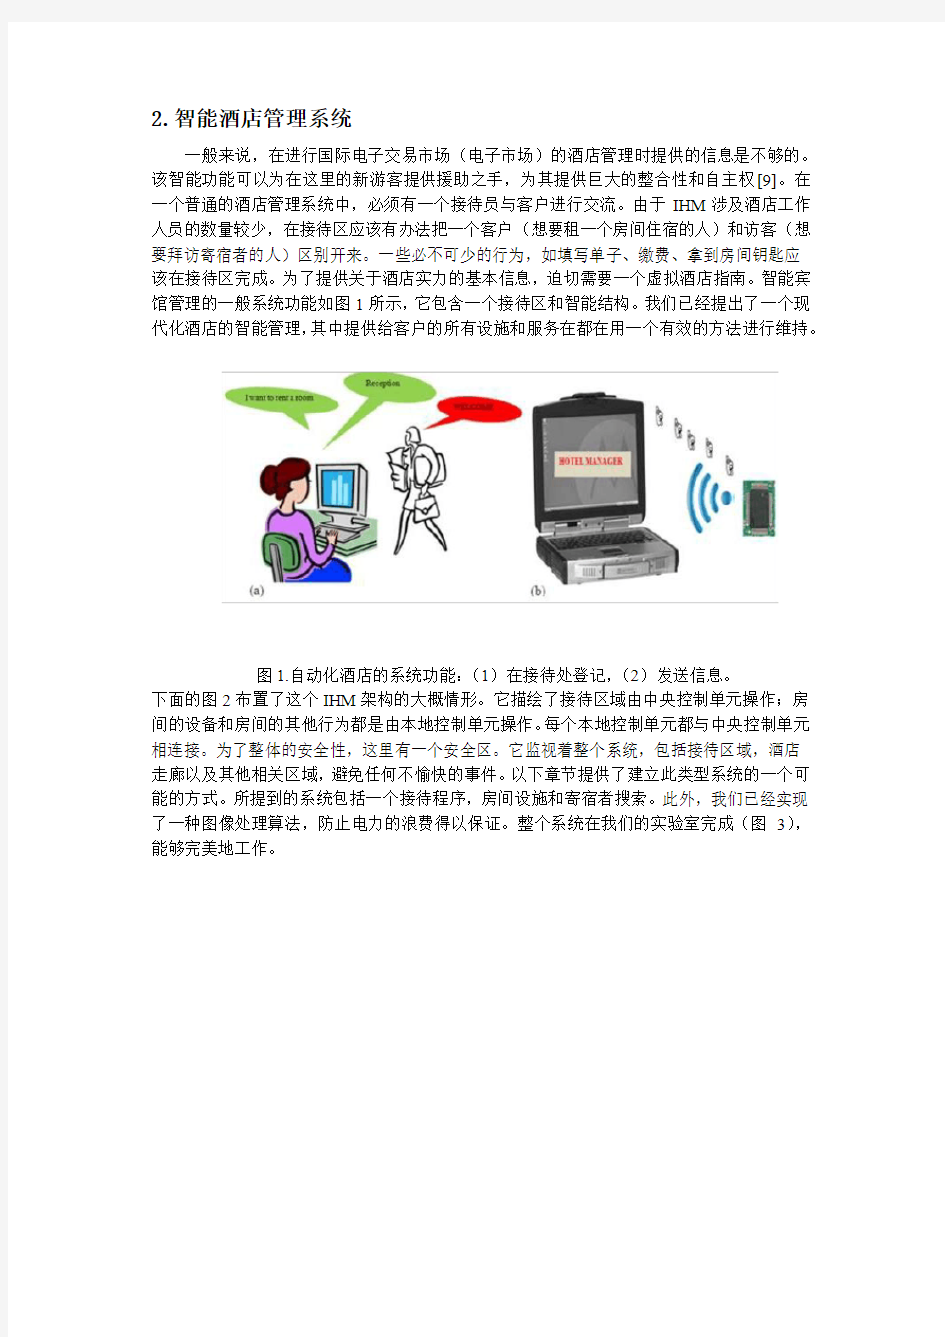 1.外文文献翻译--针对国际市场的电子智能酒店管理系统